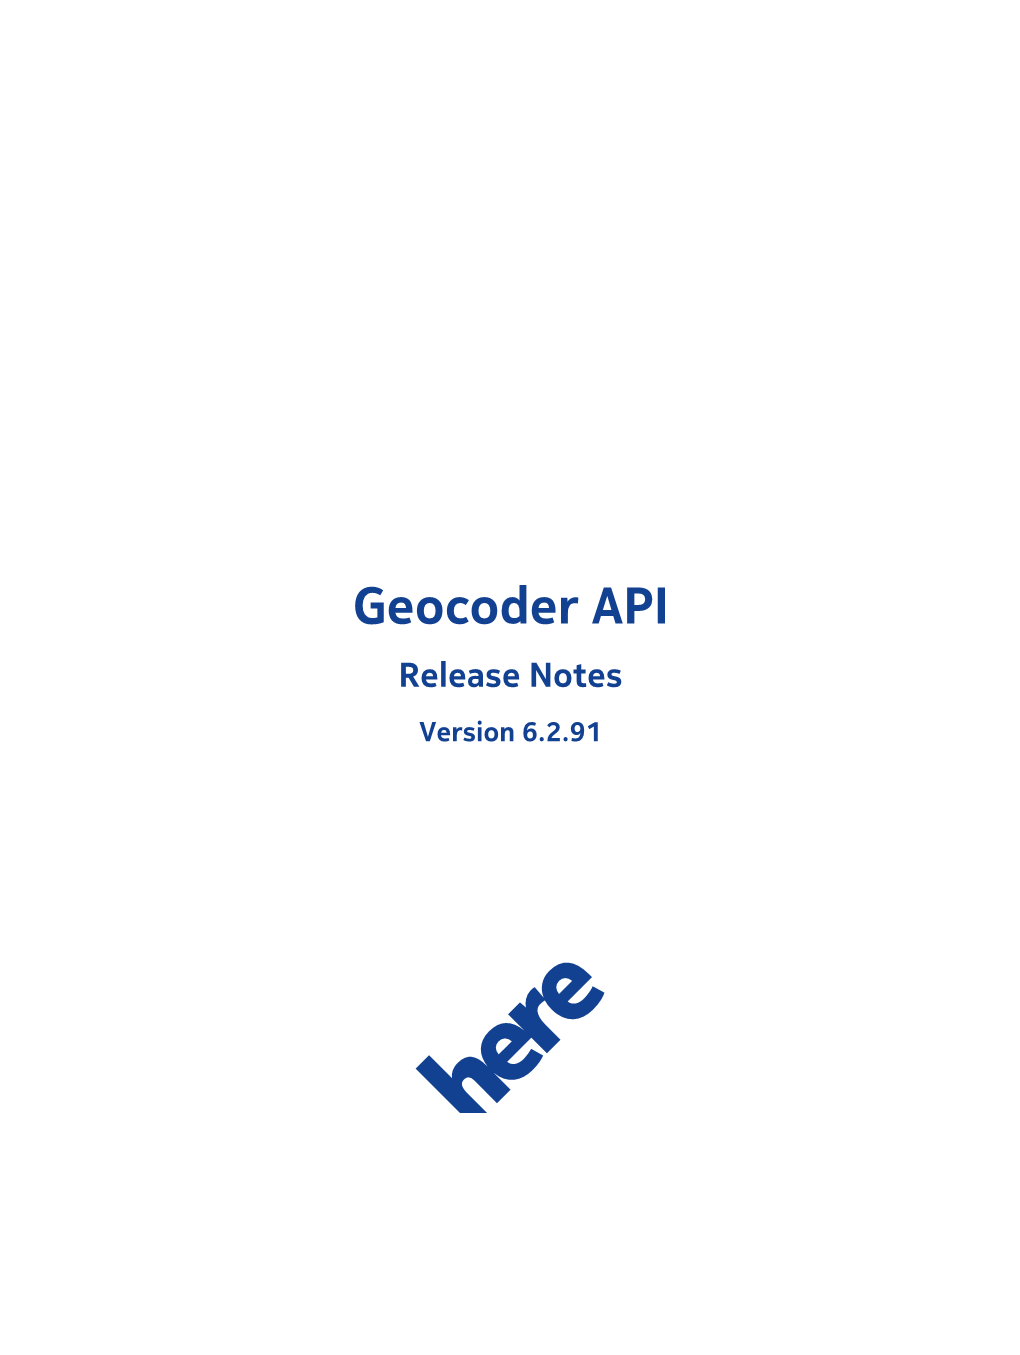 Geocoder API V6.2.91